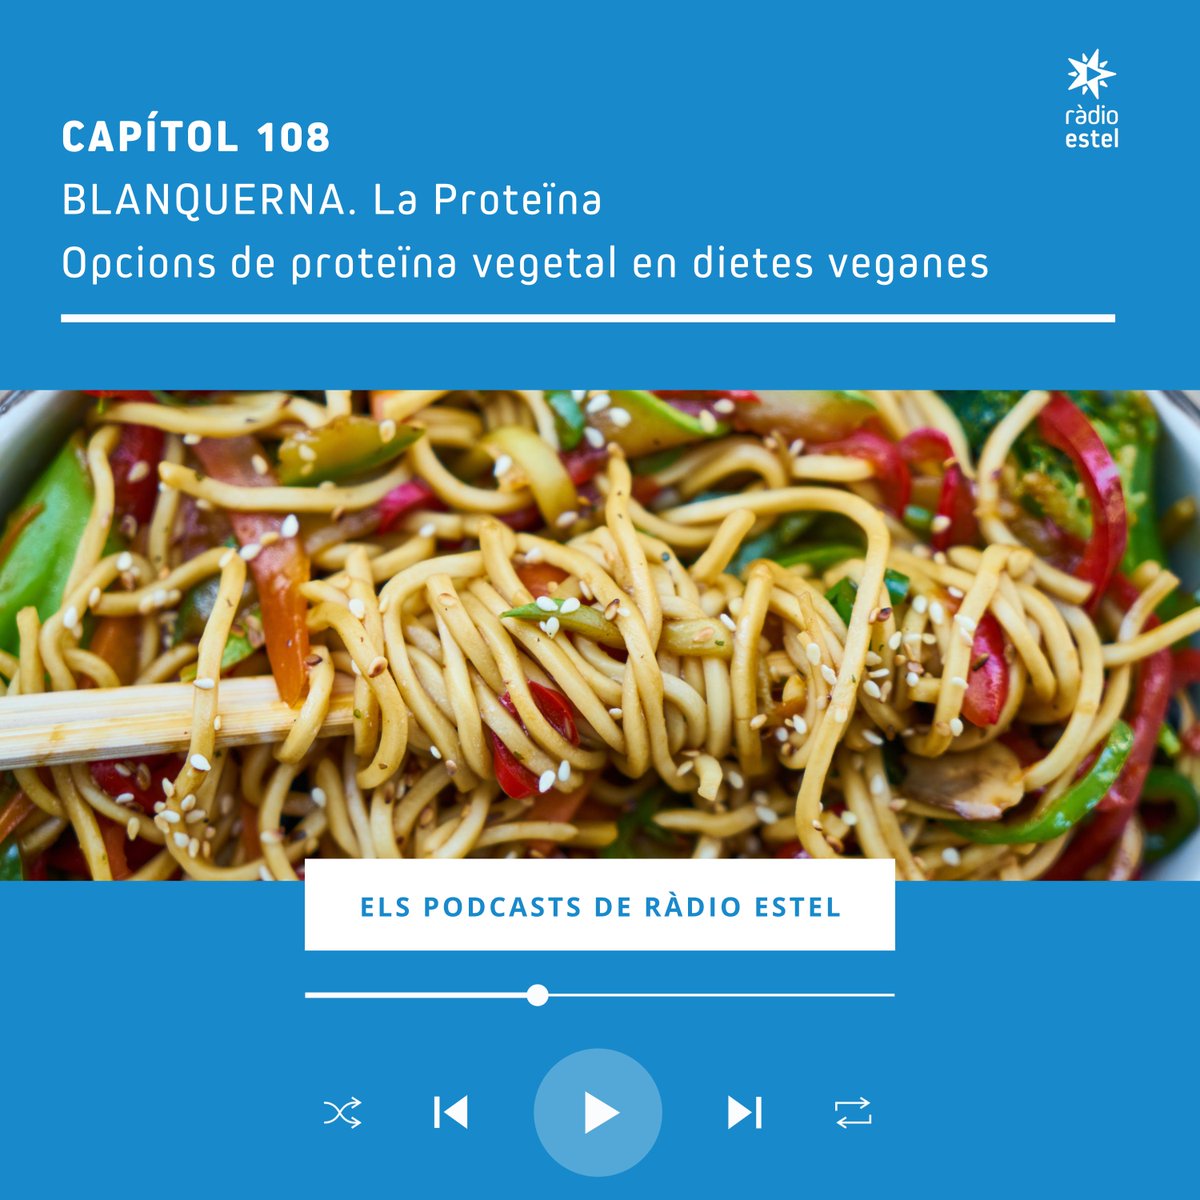 PODCAST 🎙️ La Proteïna | 'En una dieta vegana no hi ha vitamina B-12 i s'ha de complementar.' 👤 @EulliaV, doctora en Nutrició Humana de @BlanquernaFCS, ens explica com compensar els dèficits en una dieta vegana. 👇🏻 ▶️ Escolta-ho aquí: radioestel.cat/podcasts/blanq…